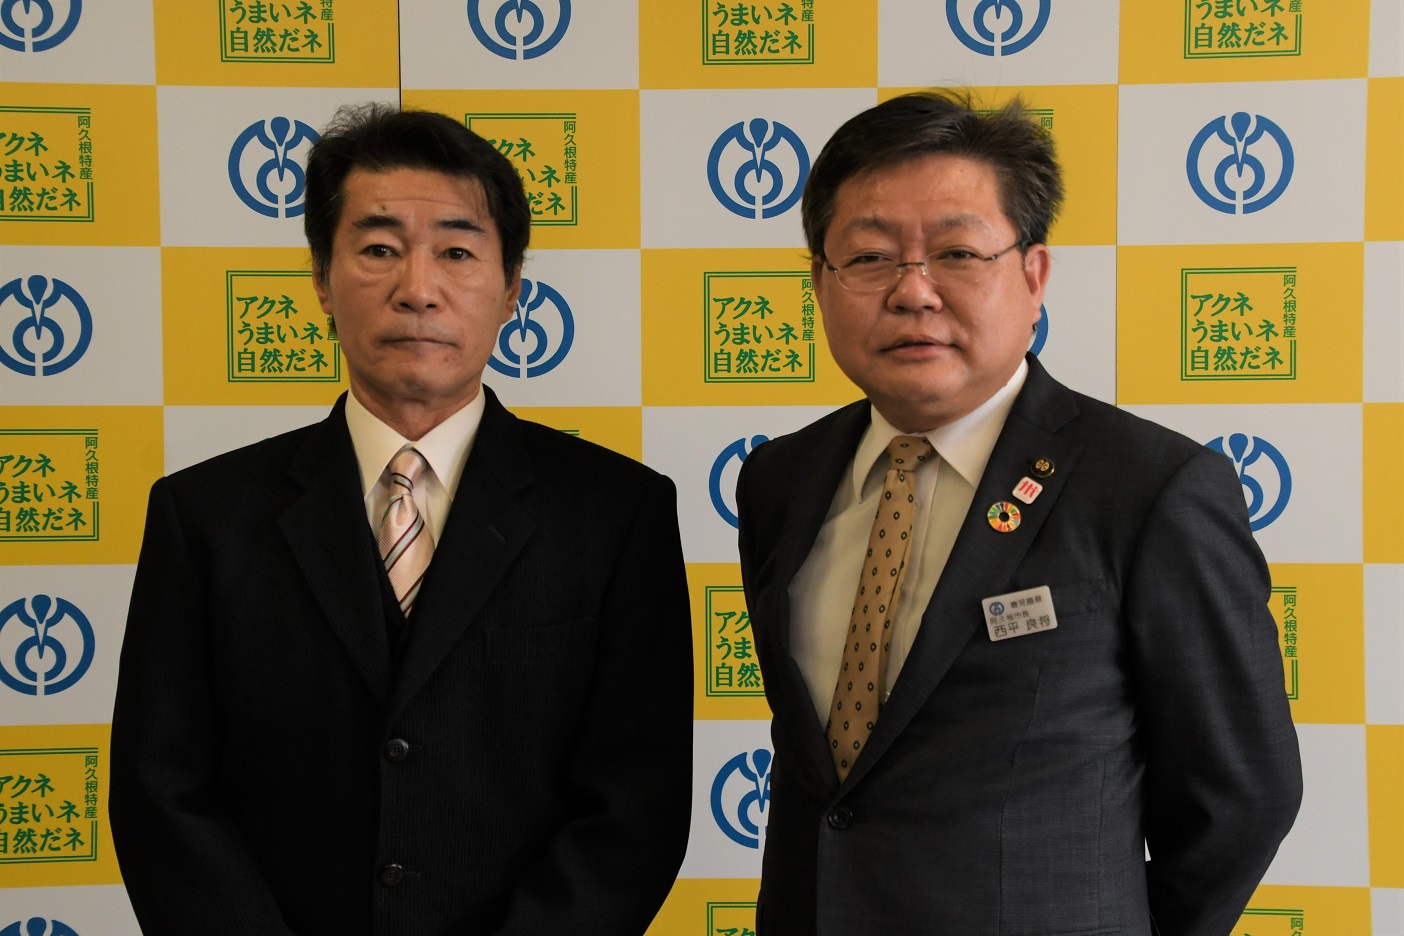 中野浩治公平委員会委員と西平市長の写真